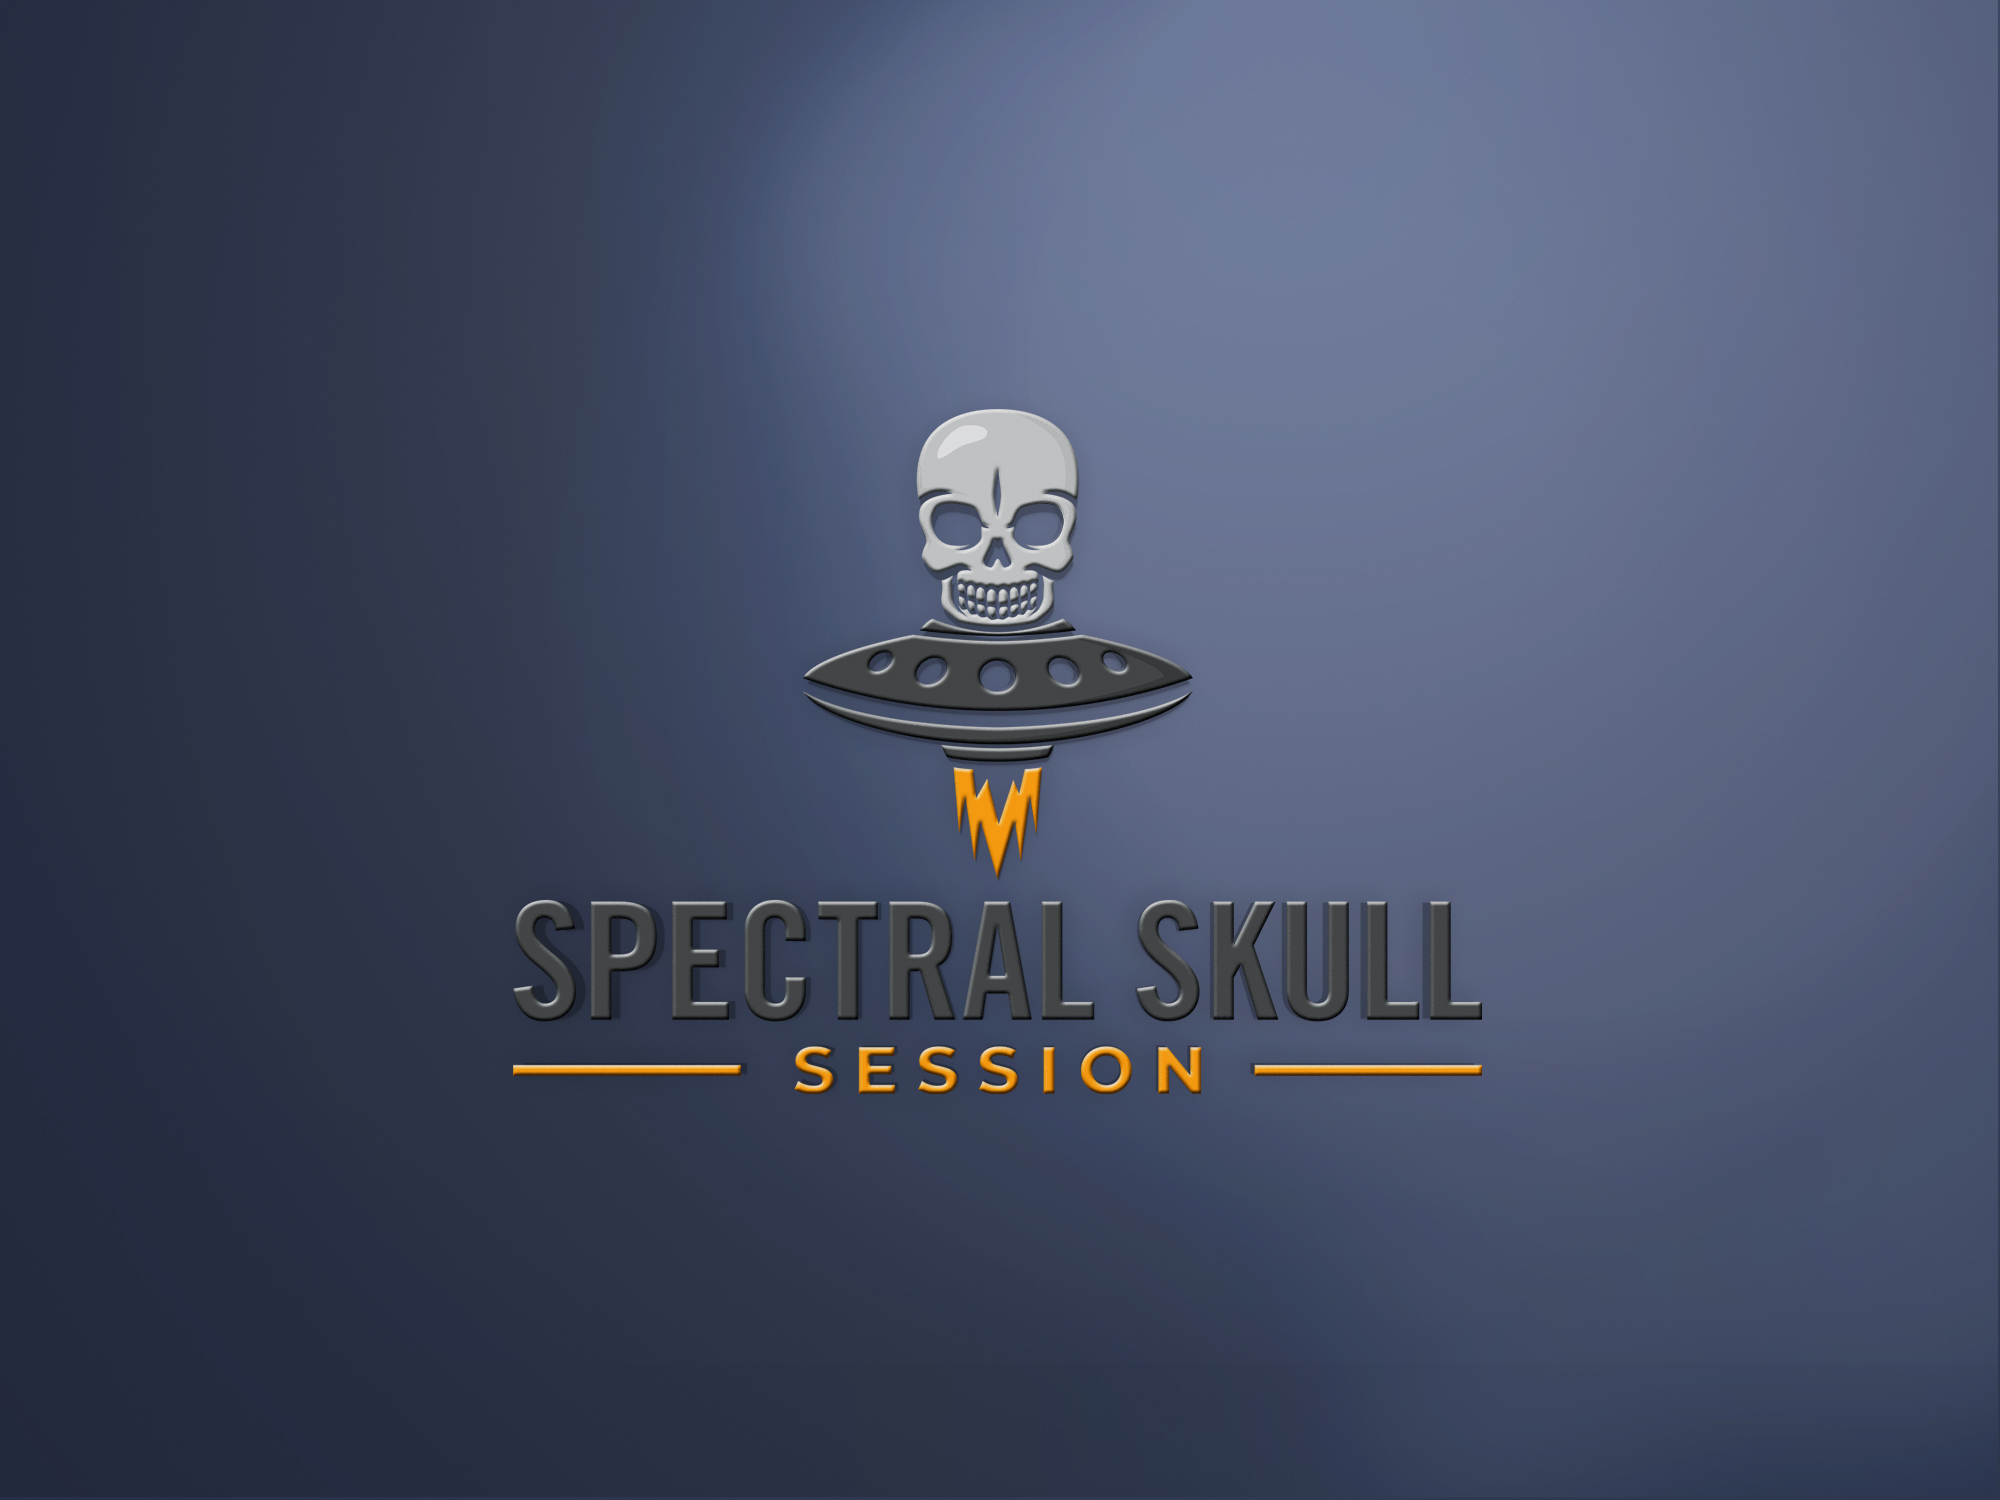 Spectral Skull Session